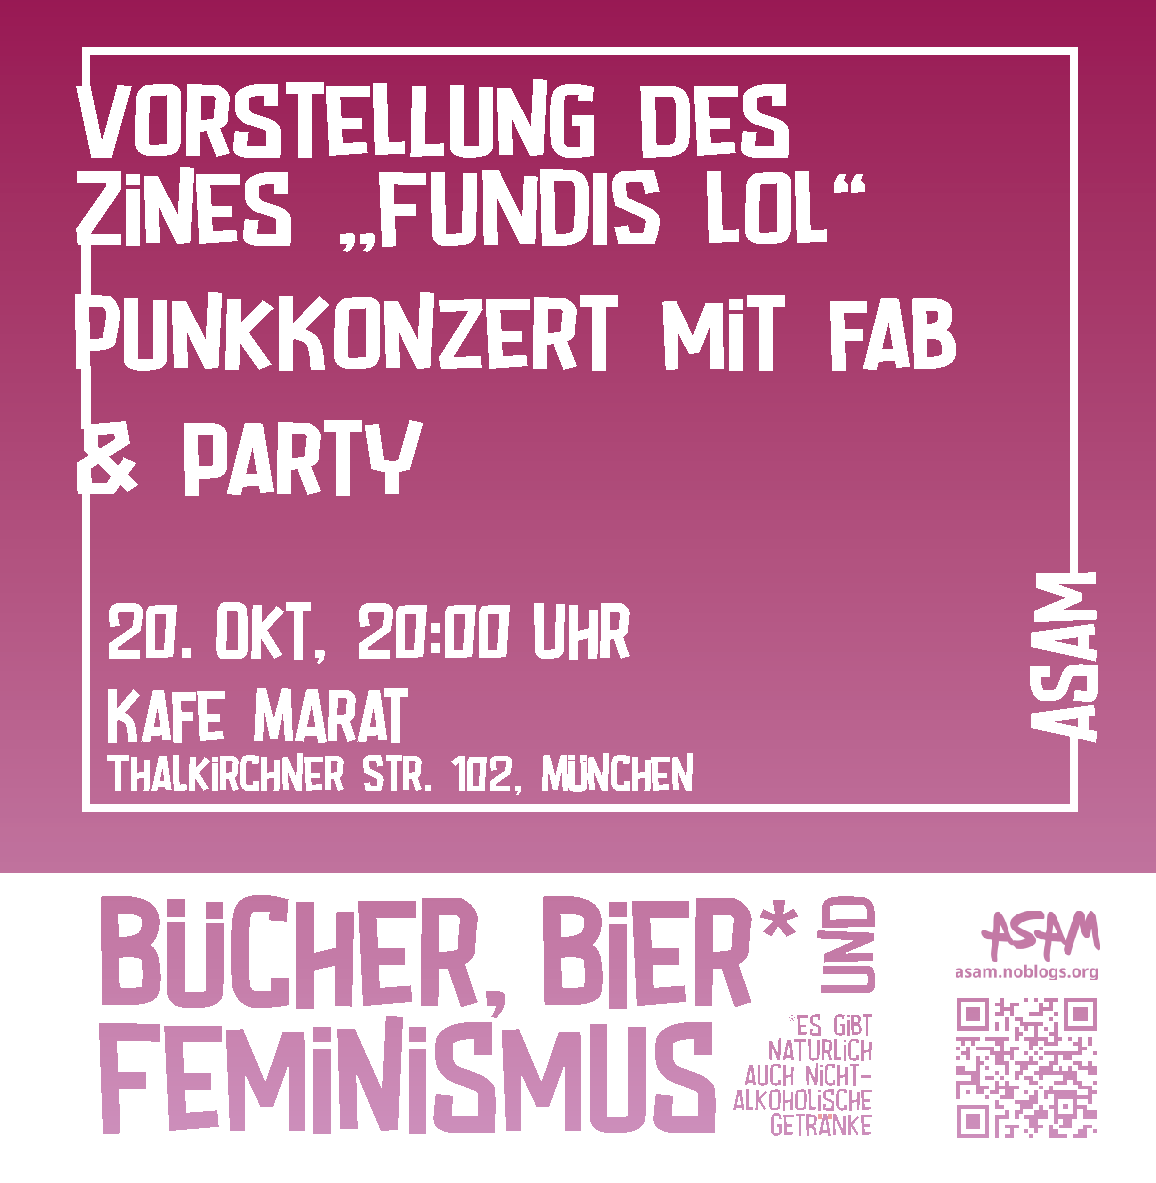 Freitagskafe: Feministische Zinevorstellung, Konzert mit fab & Party